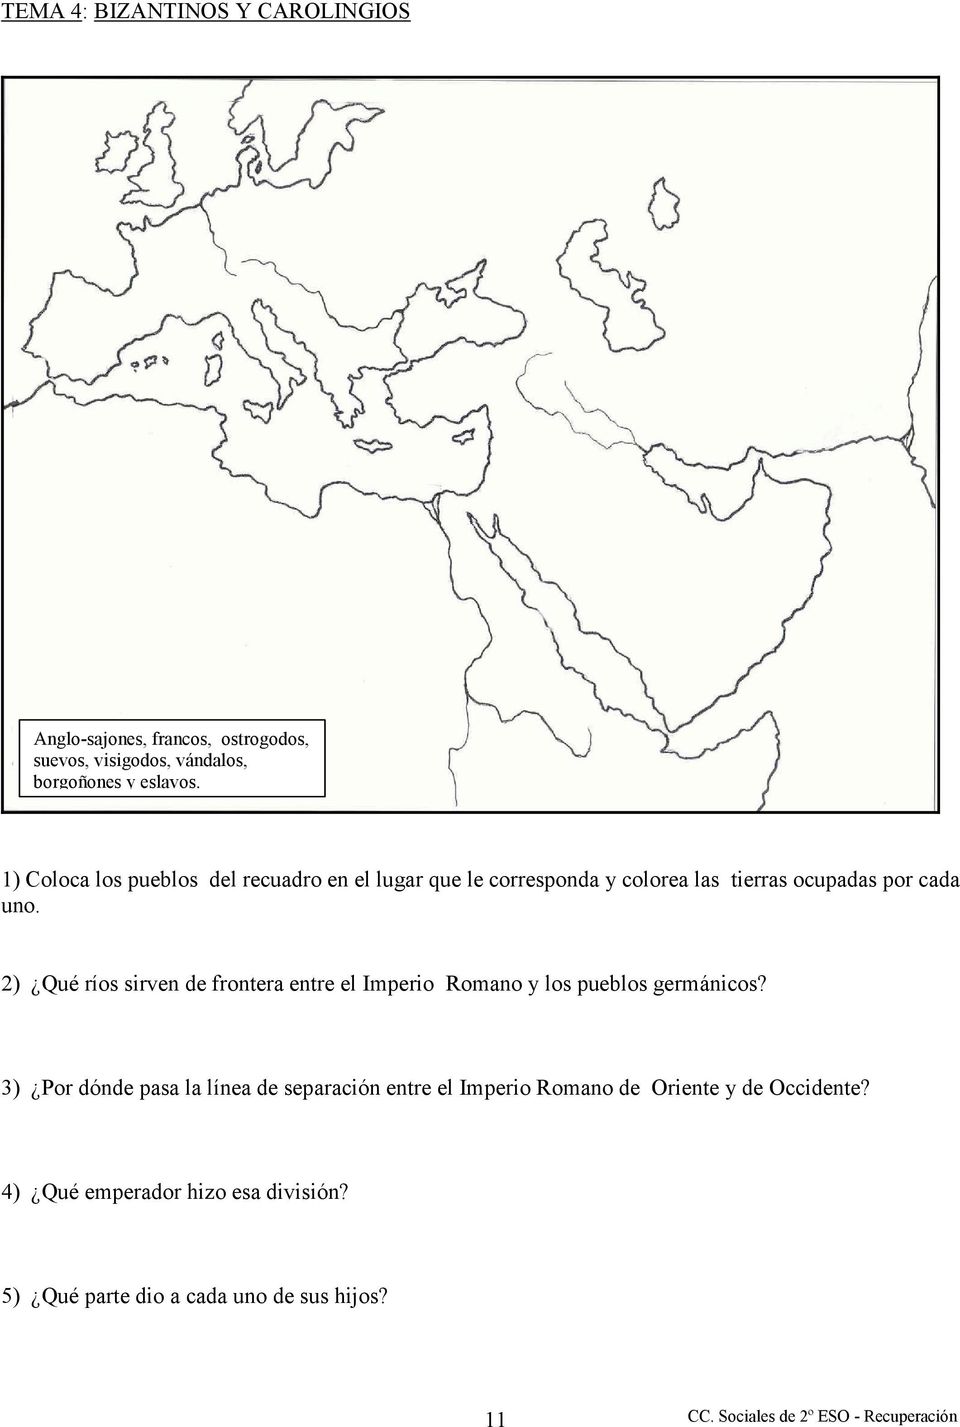 2) Qué ríos sirven de frontera entre el Imperio Romano y los pueblos germánicos?